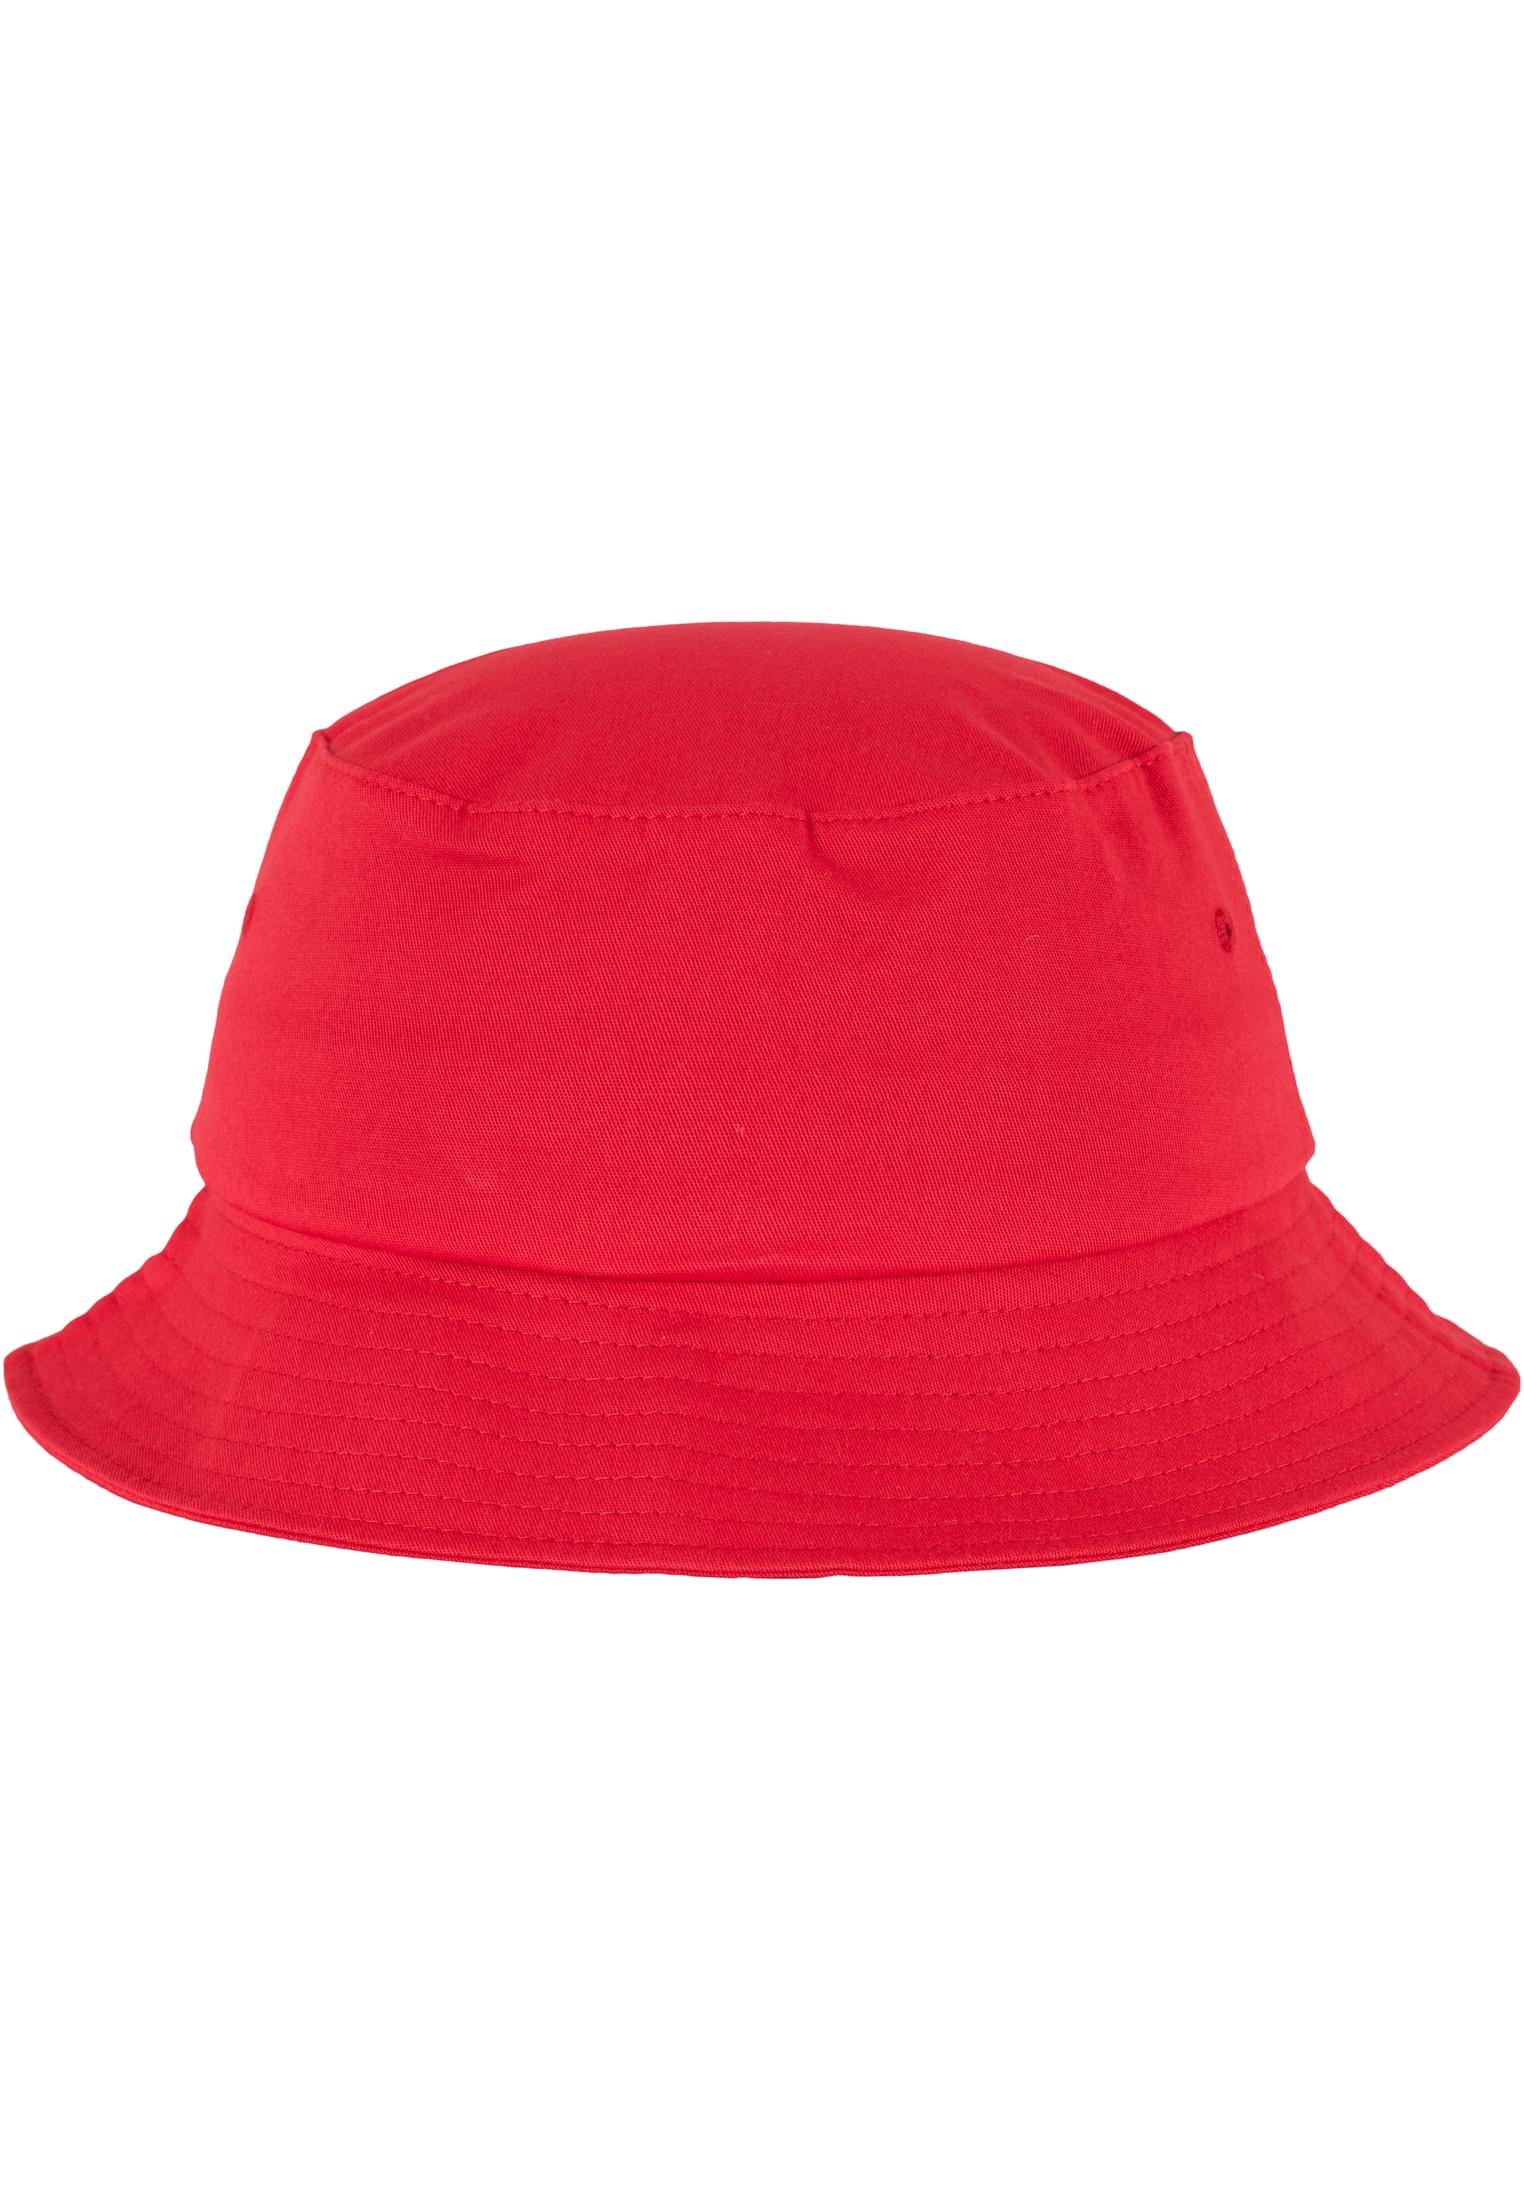 Flexfit Cotton Twill Bucket Red Beanie